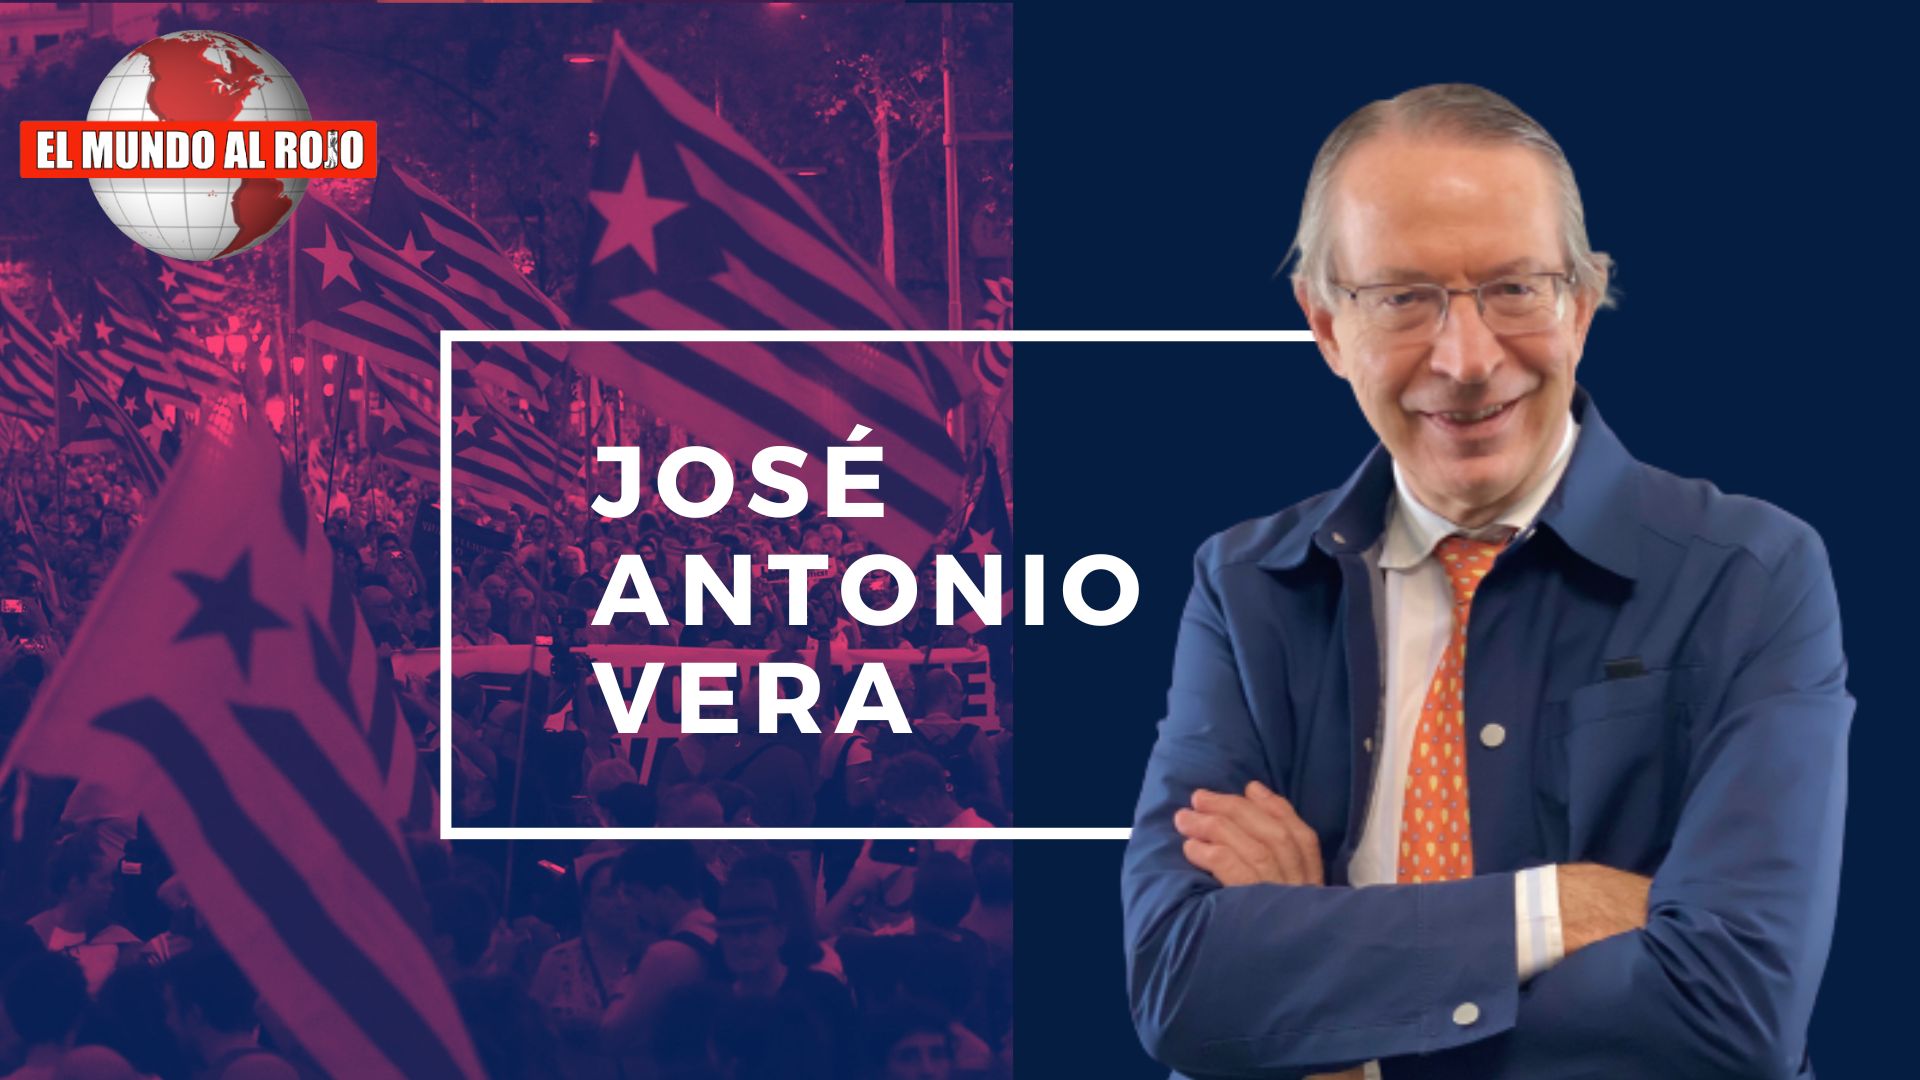 José Antonio Vera